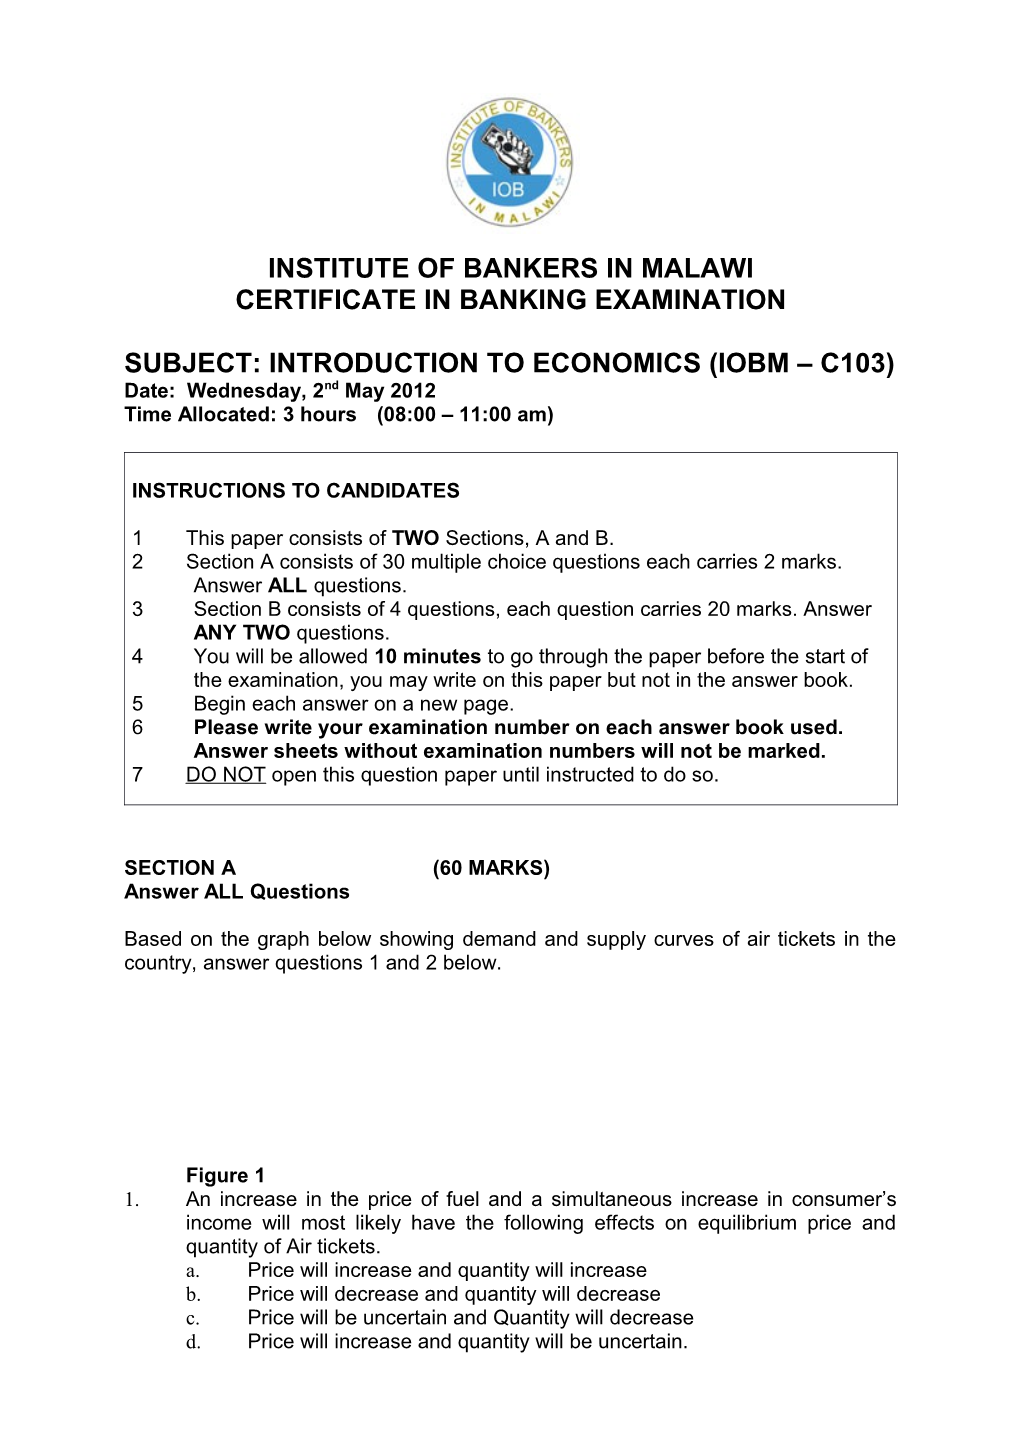 Subject: Introduction to Economics (Iobm C103)